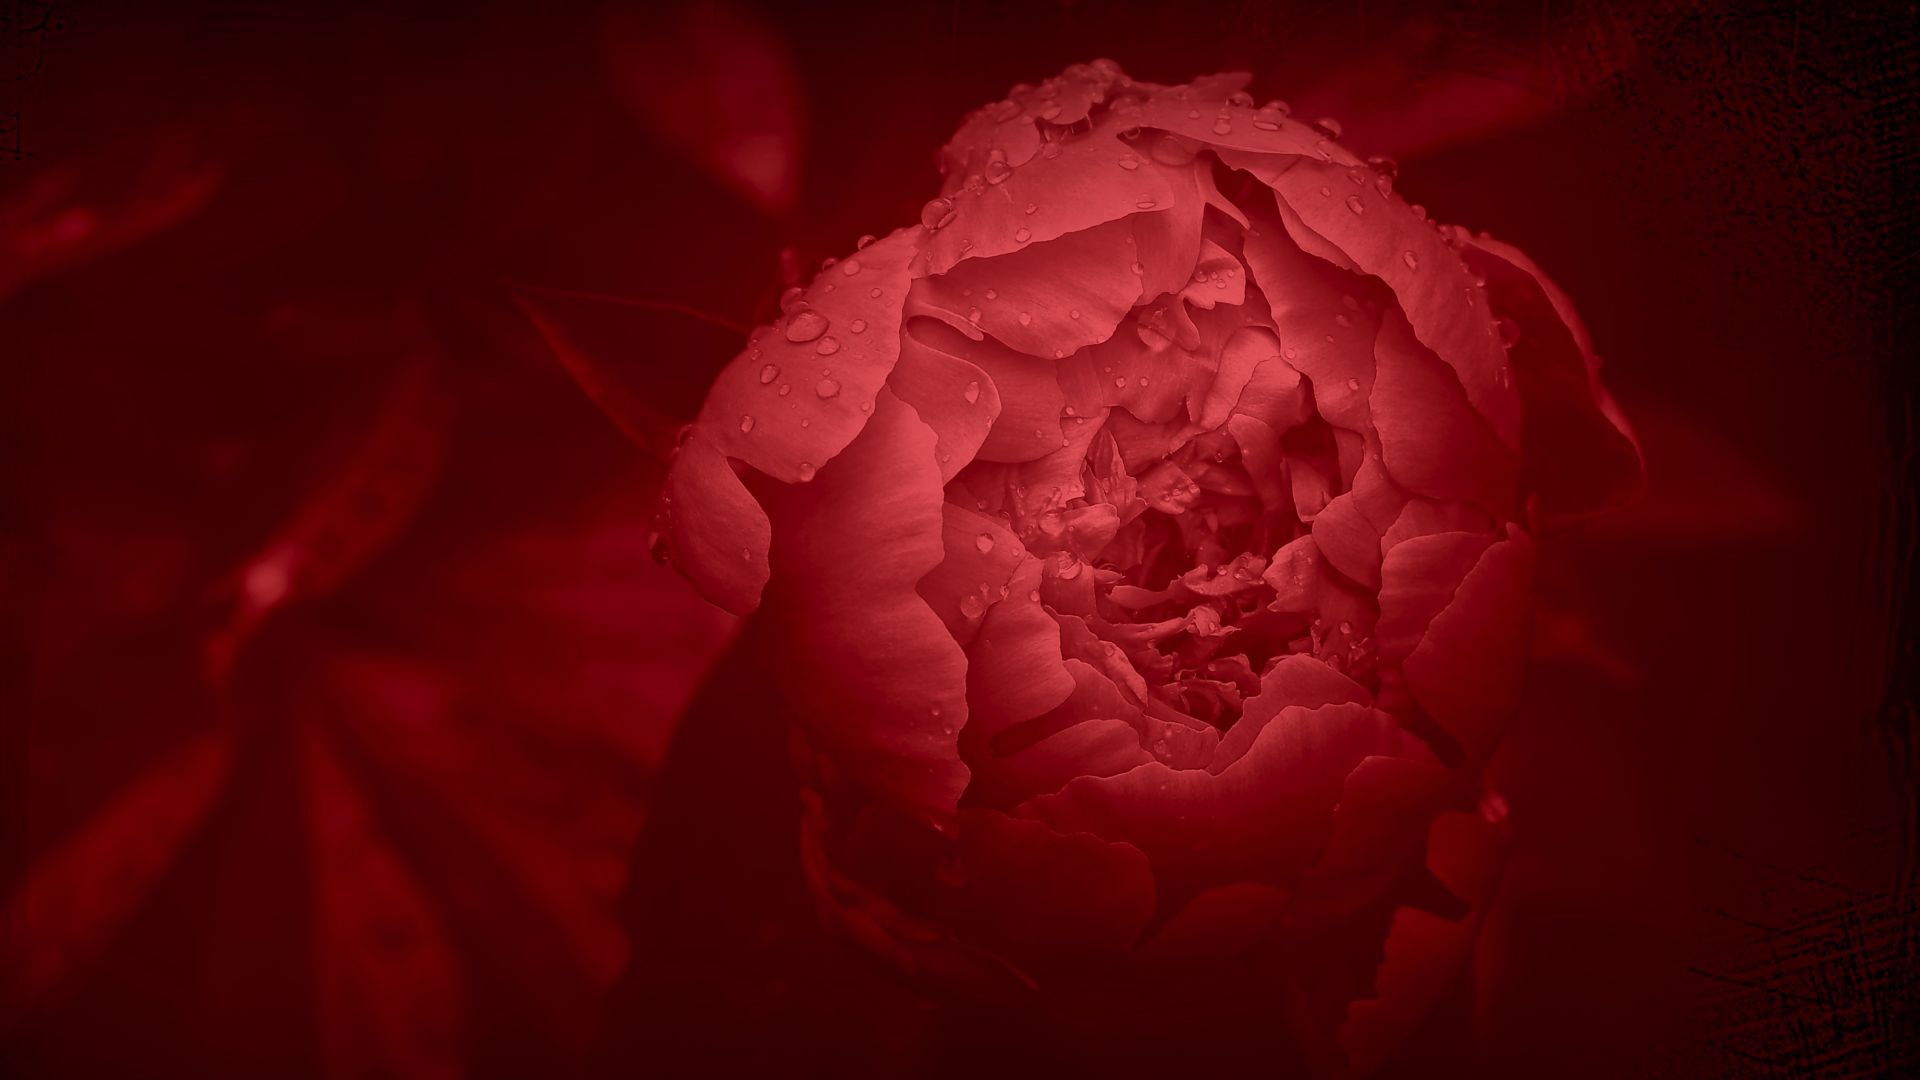 Wallpaper Peony, red flower, petals, close up, drops